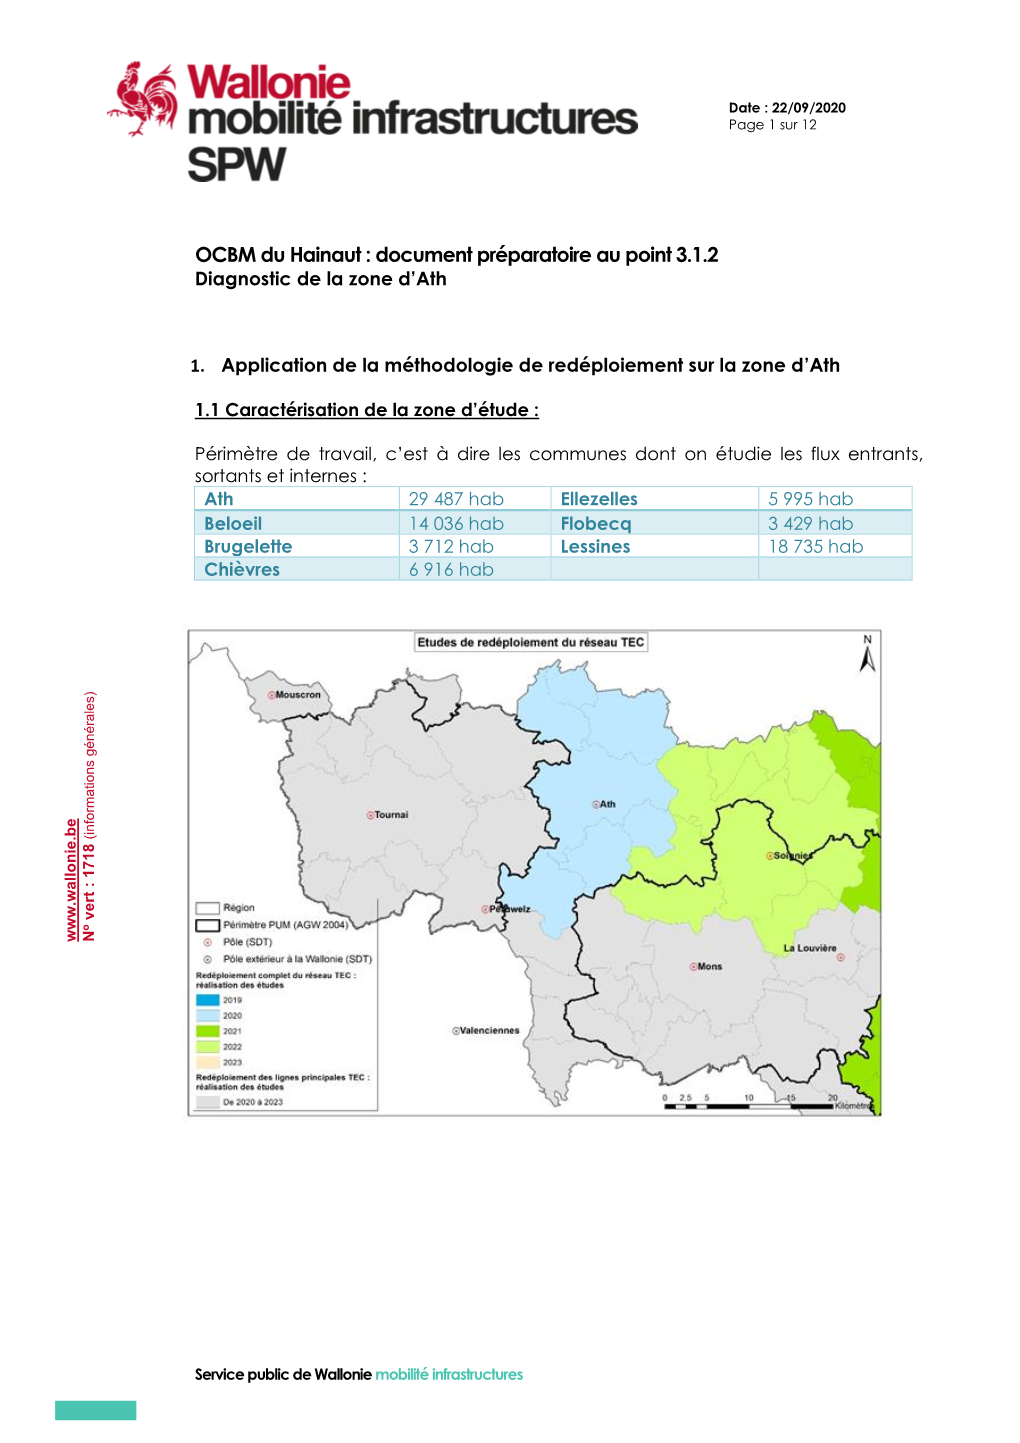 OCBM Du Hainaut : Document Préparatoire Au Point 3.1.2 Diagnostic De La Zone D’Ath